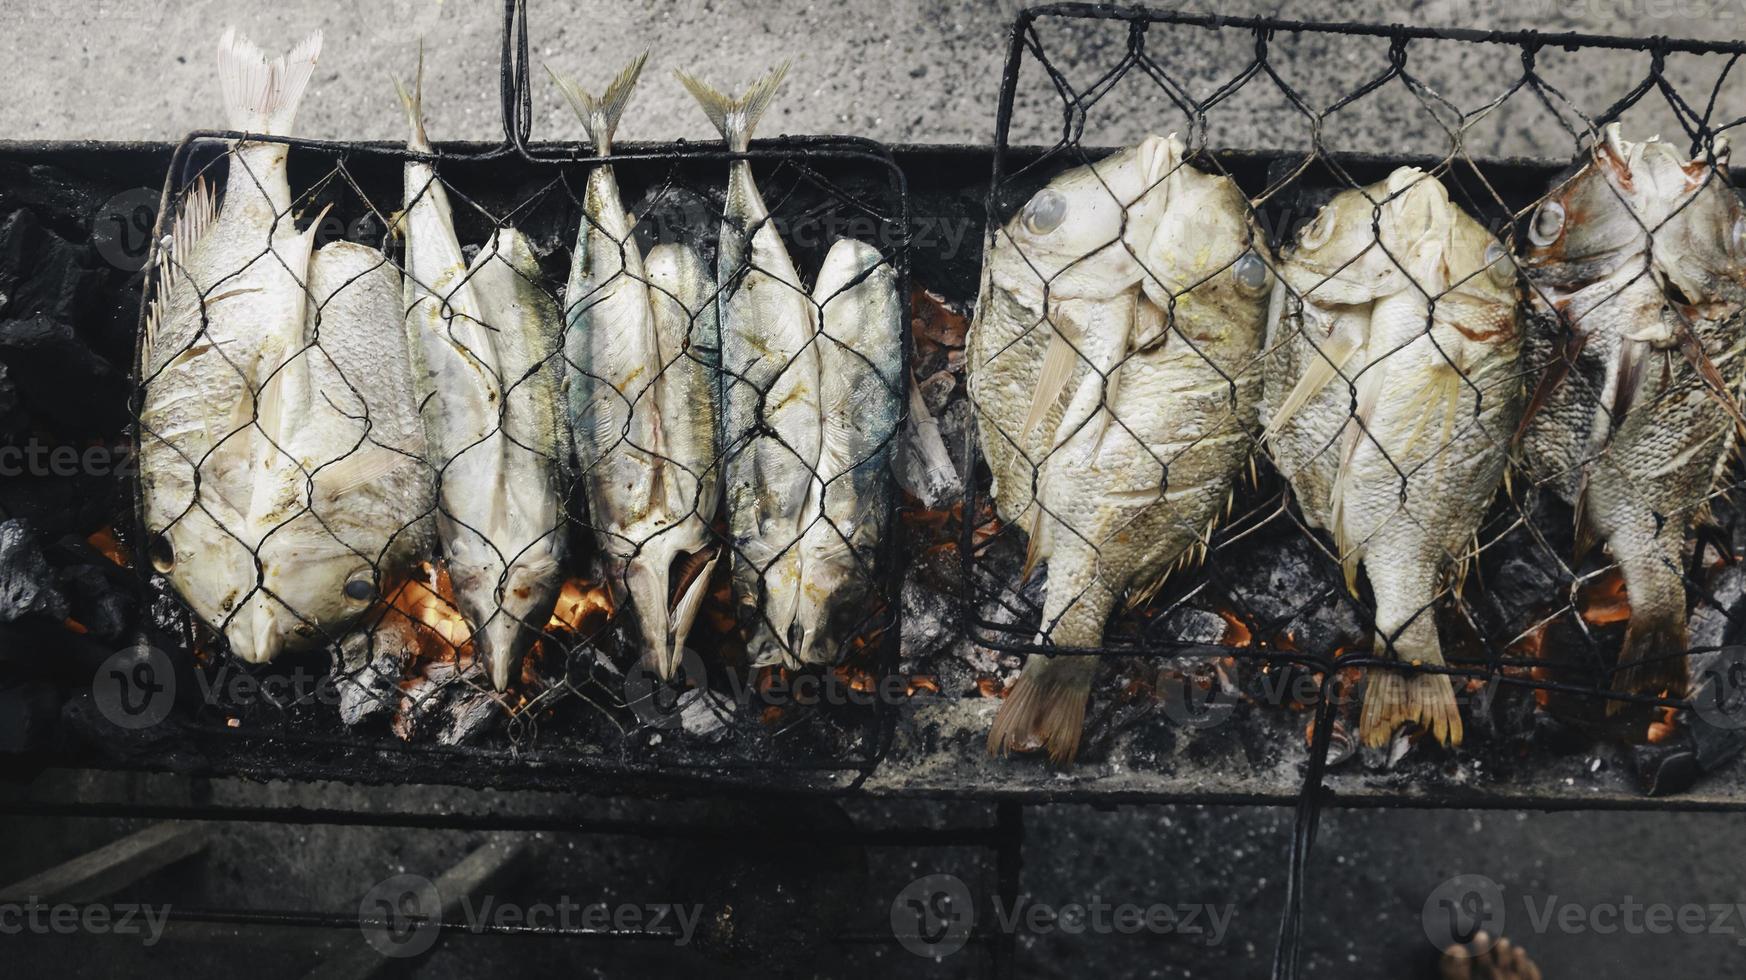 grillad fisk med kol till salu på gatumatmarknad eller restaurang i Indonesien foto